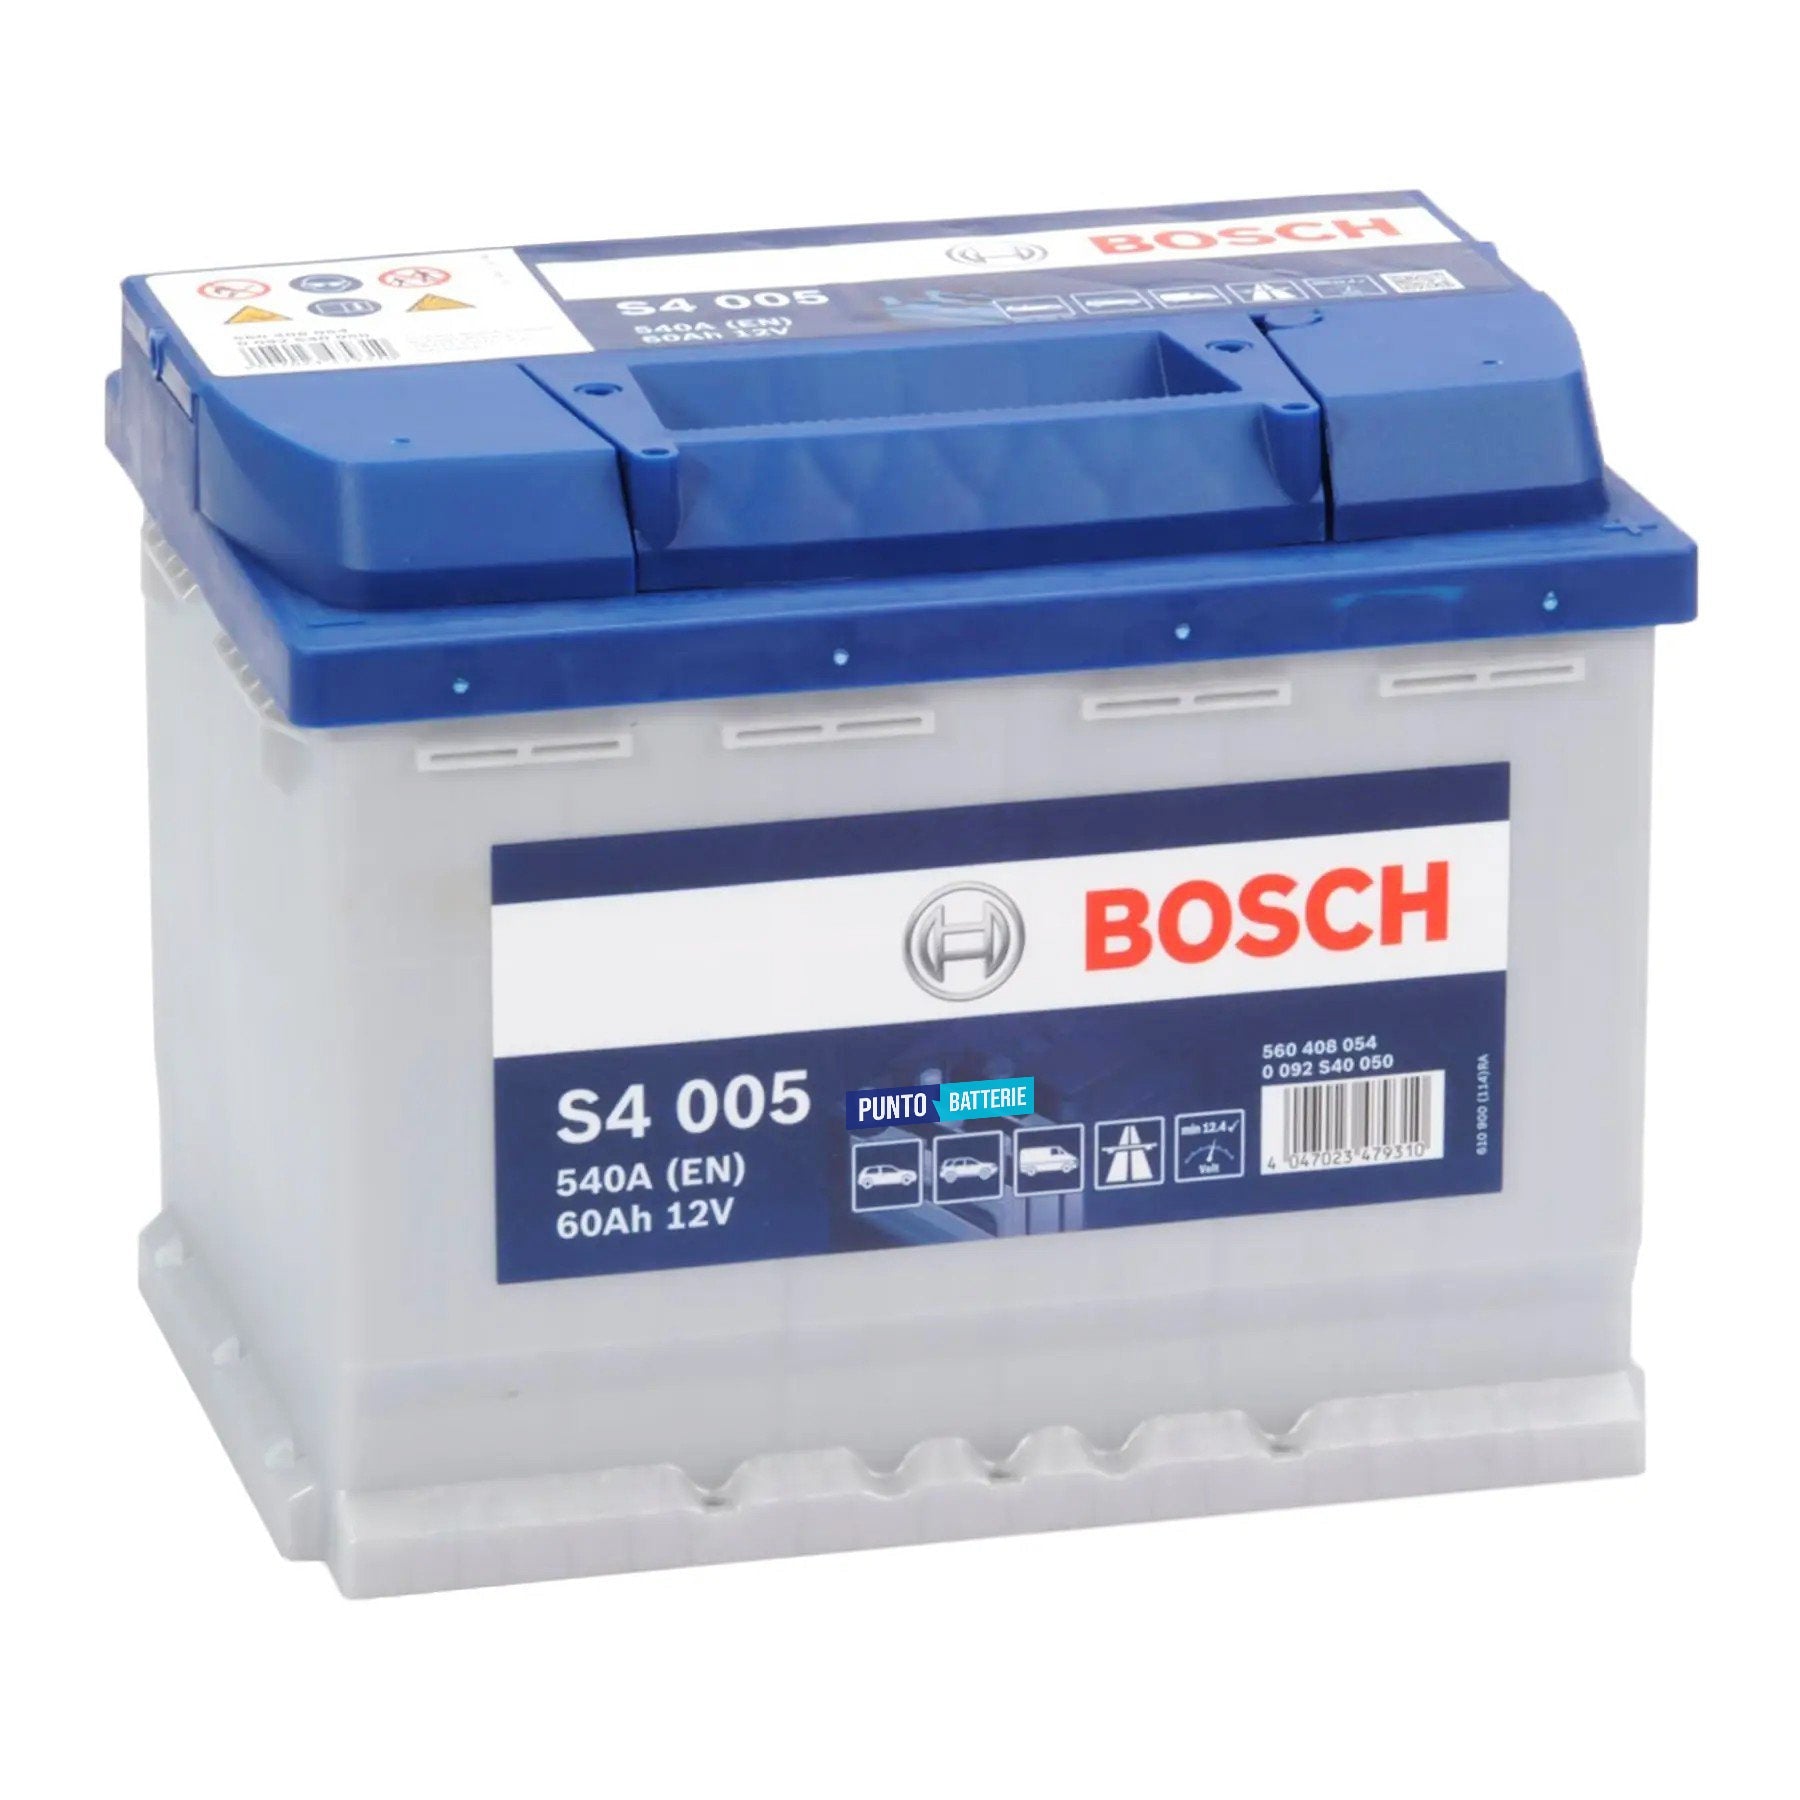 Batteria originale Bosch S4 S4 005, dimensioni 242 x 175 x 190, polo positivo a destra, 12 volt, 60 amperora, 540 ampere. Batteria per auto e veicoli leggeri.